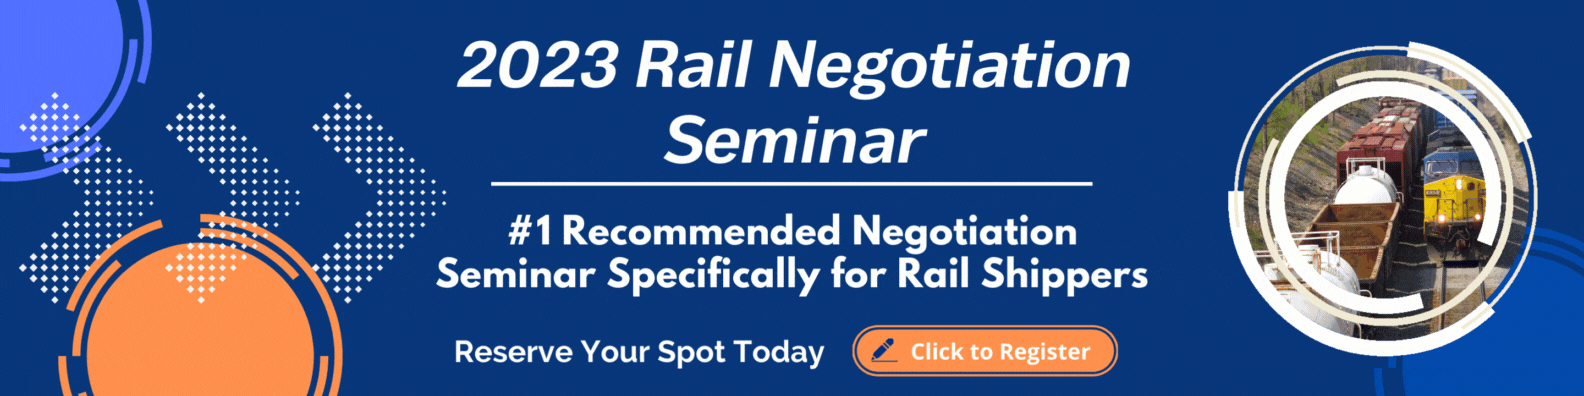 RCC - Rail Negotiation Seminar Banner